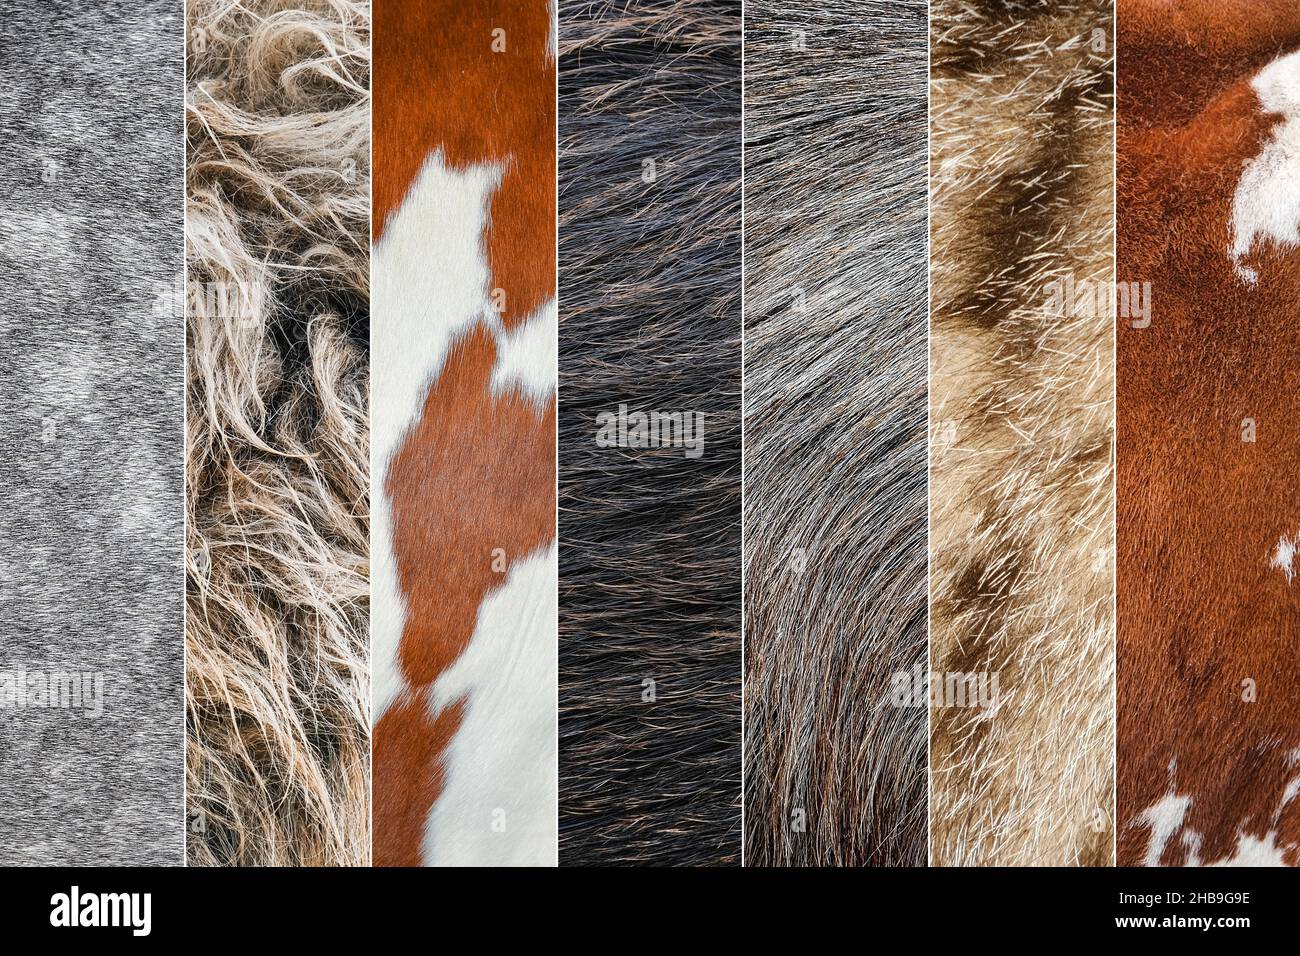 Collage de photos de laine et de fourrure de différents animaux.Vache, mouton, chèvre, cheval, âne animaux peau et fourrure gros plan Banque D'Images